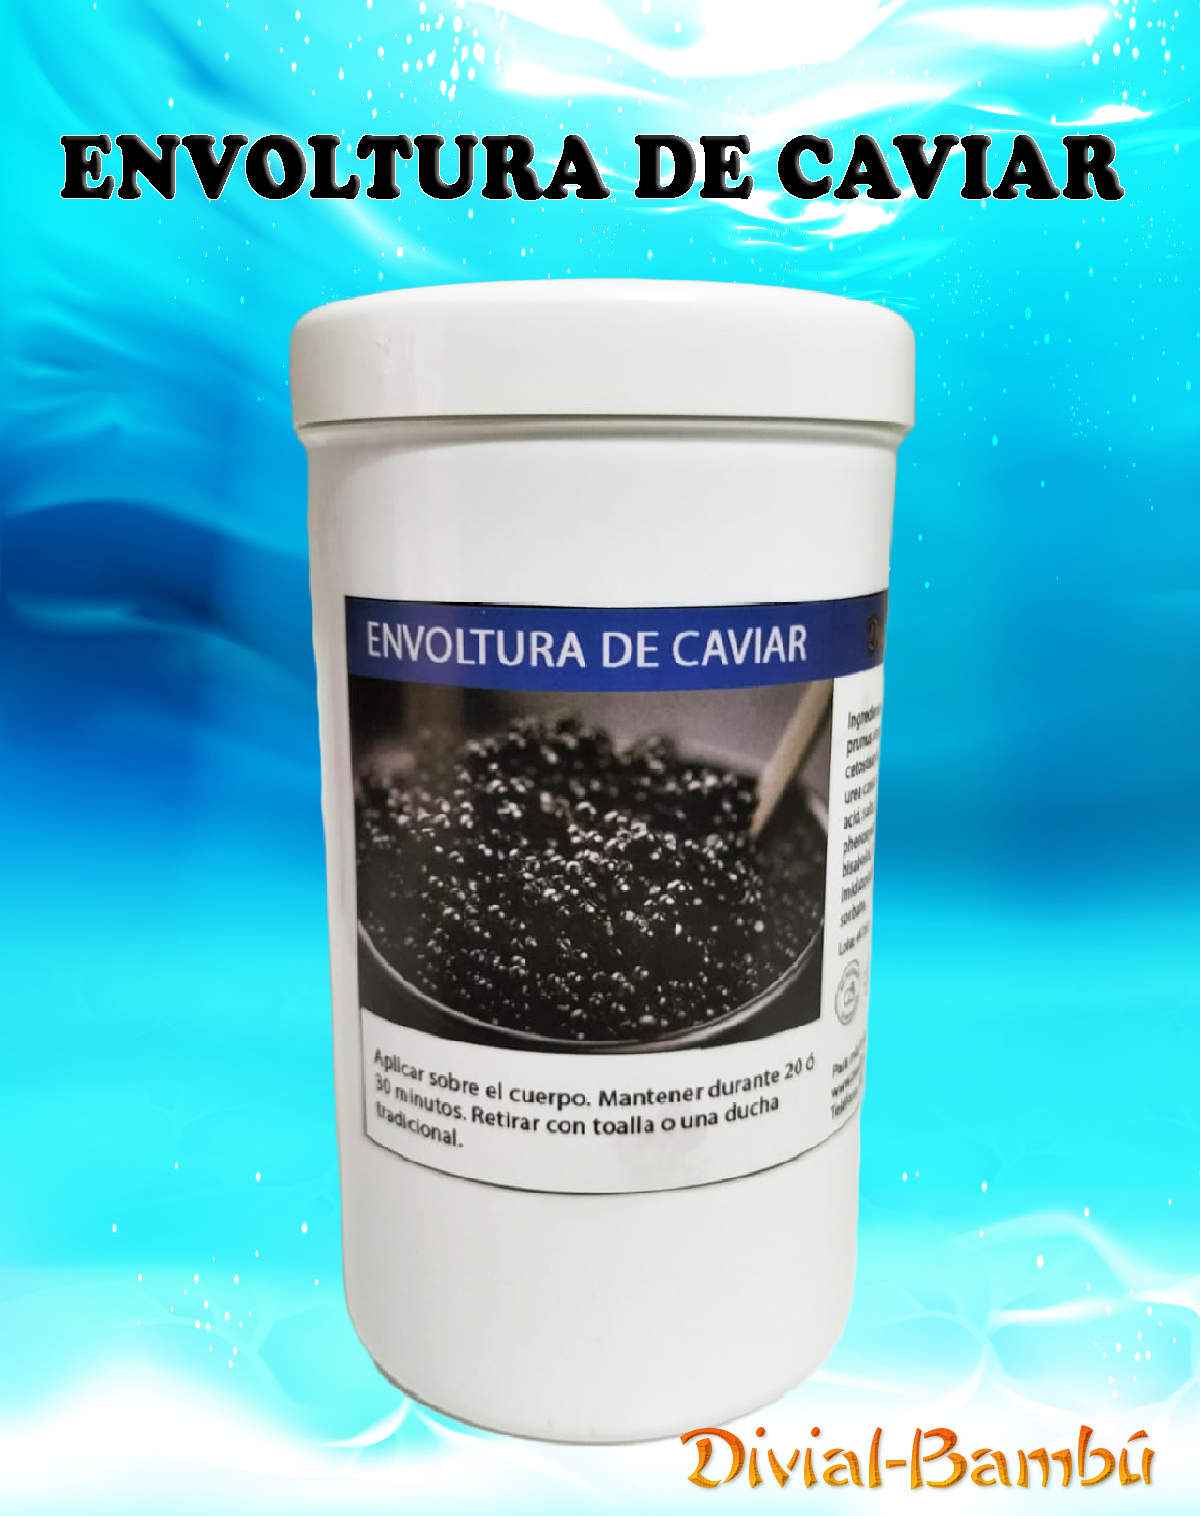 envoltura_caviar_publi